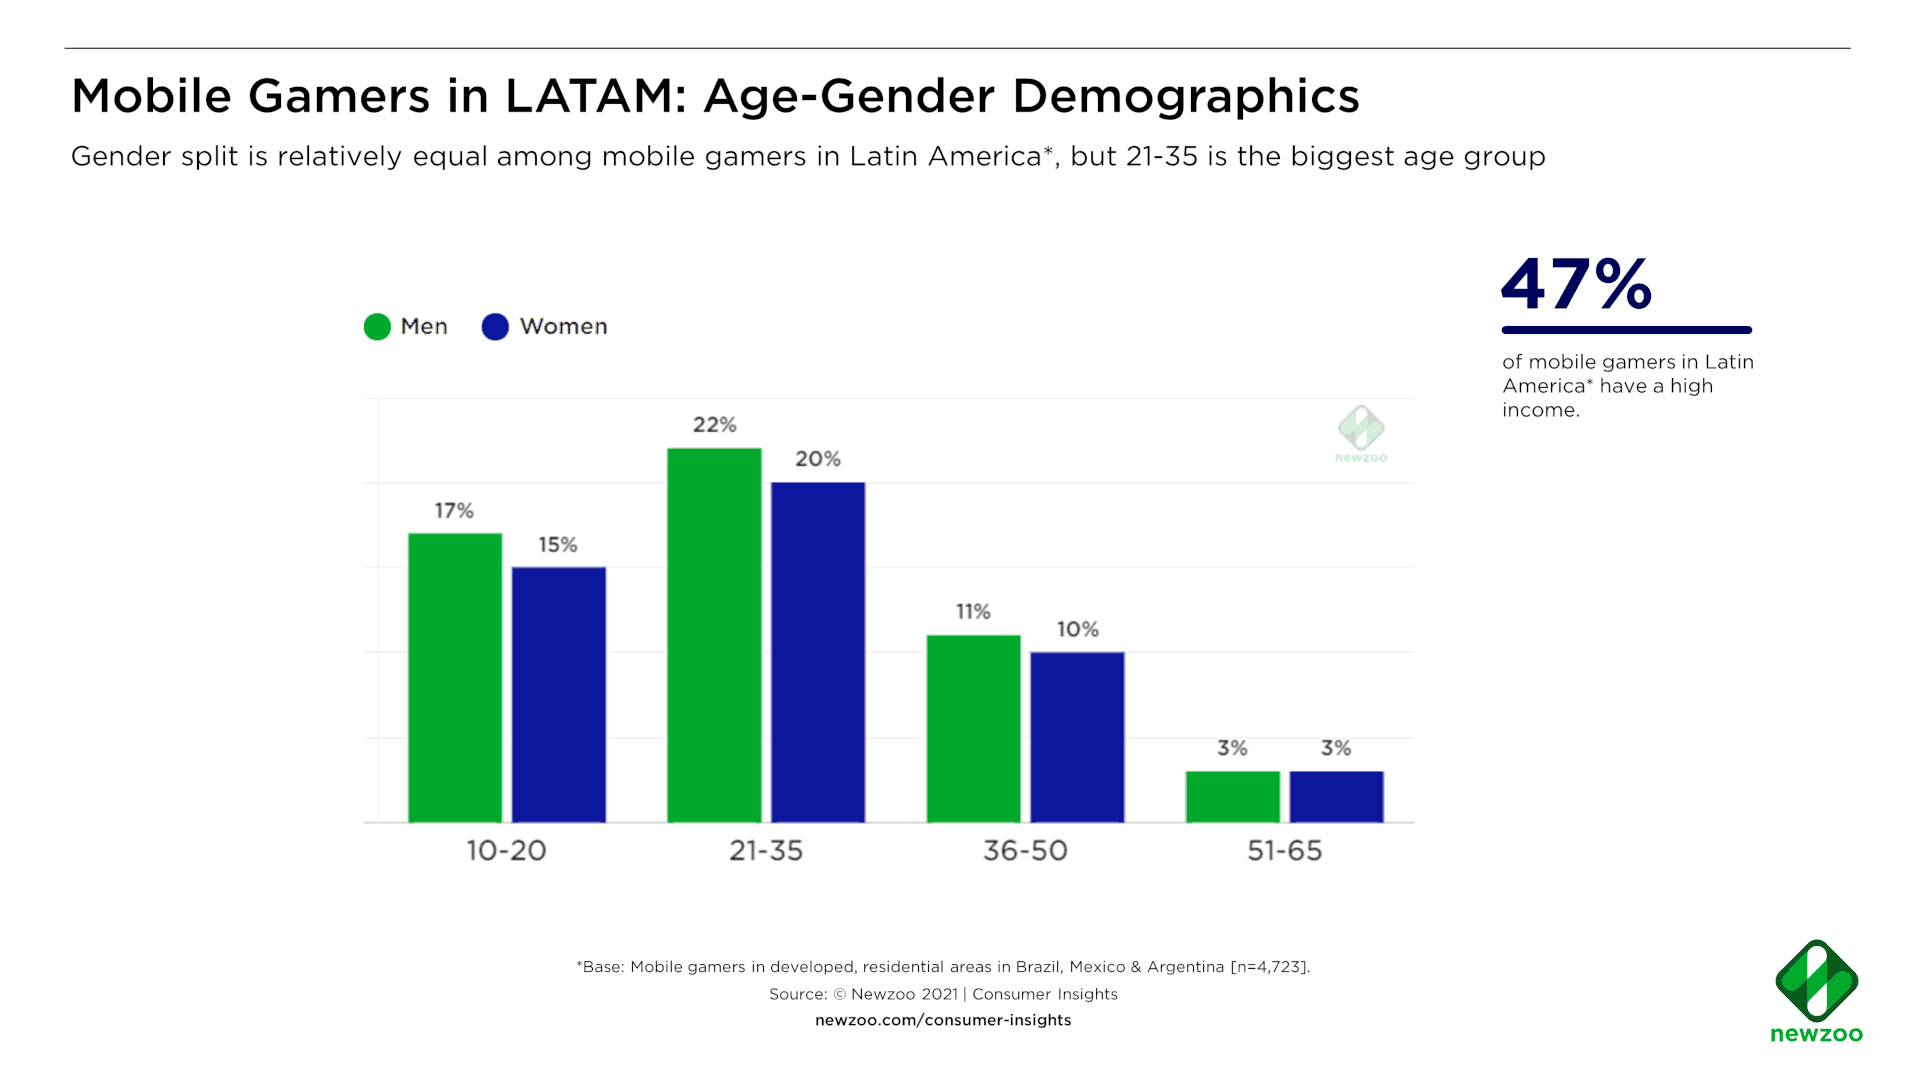 Joueurs mobiles en Amérique latine : données démographiques selon l'âge et le sexe